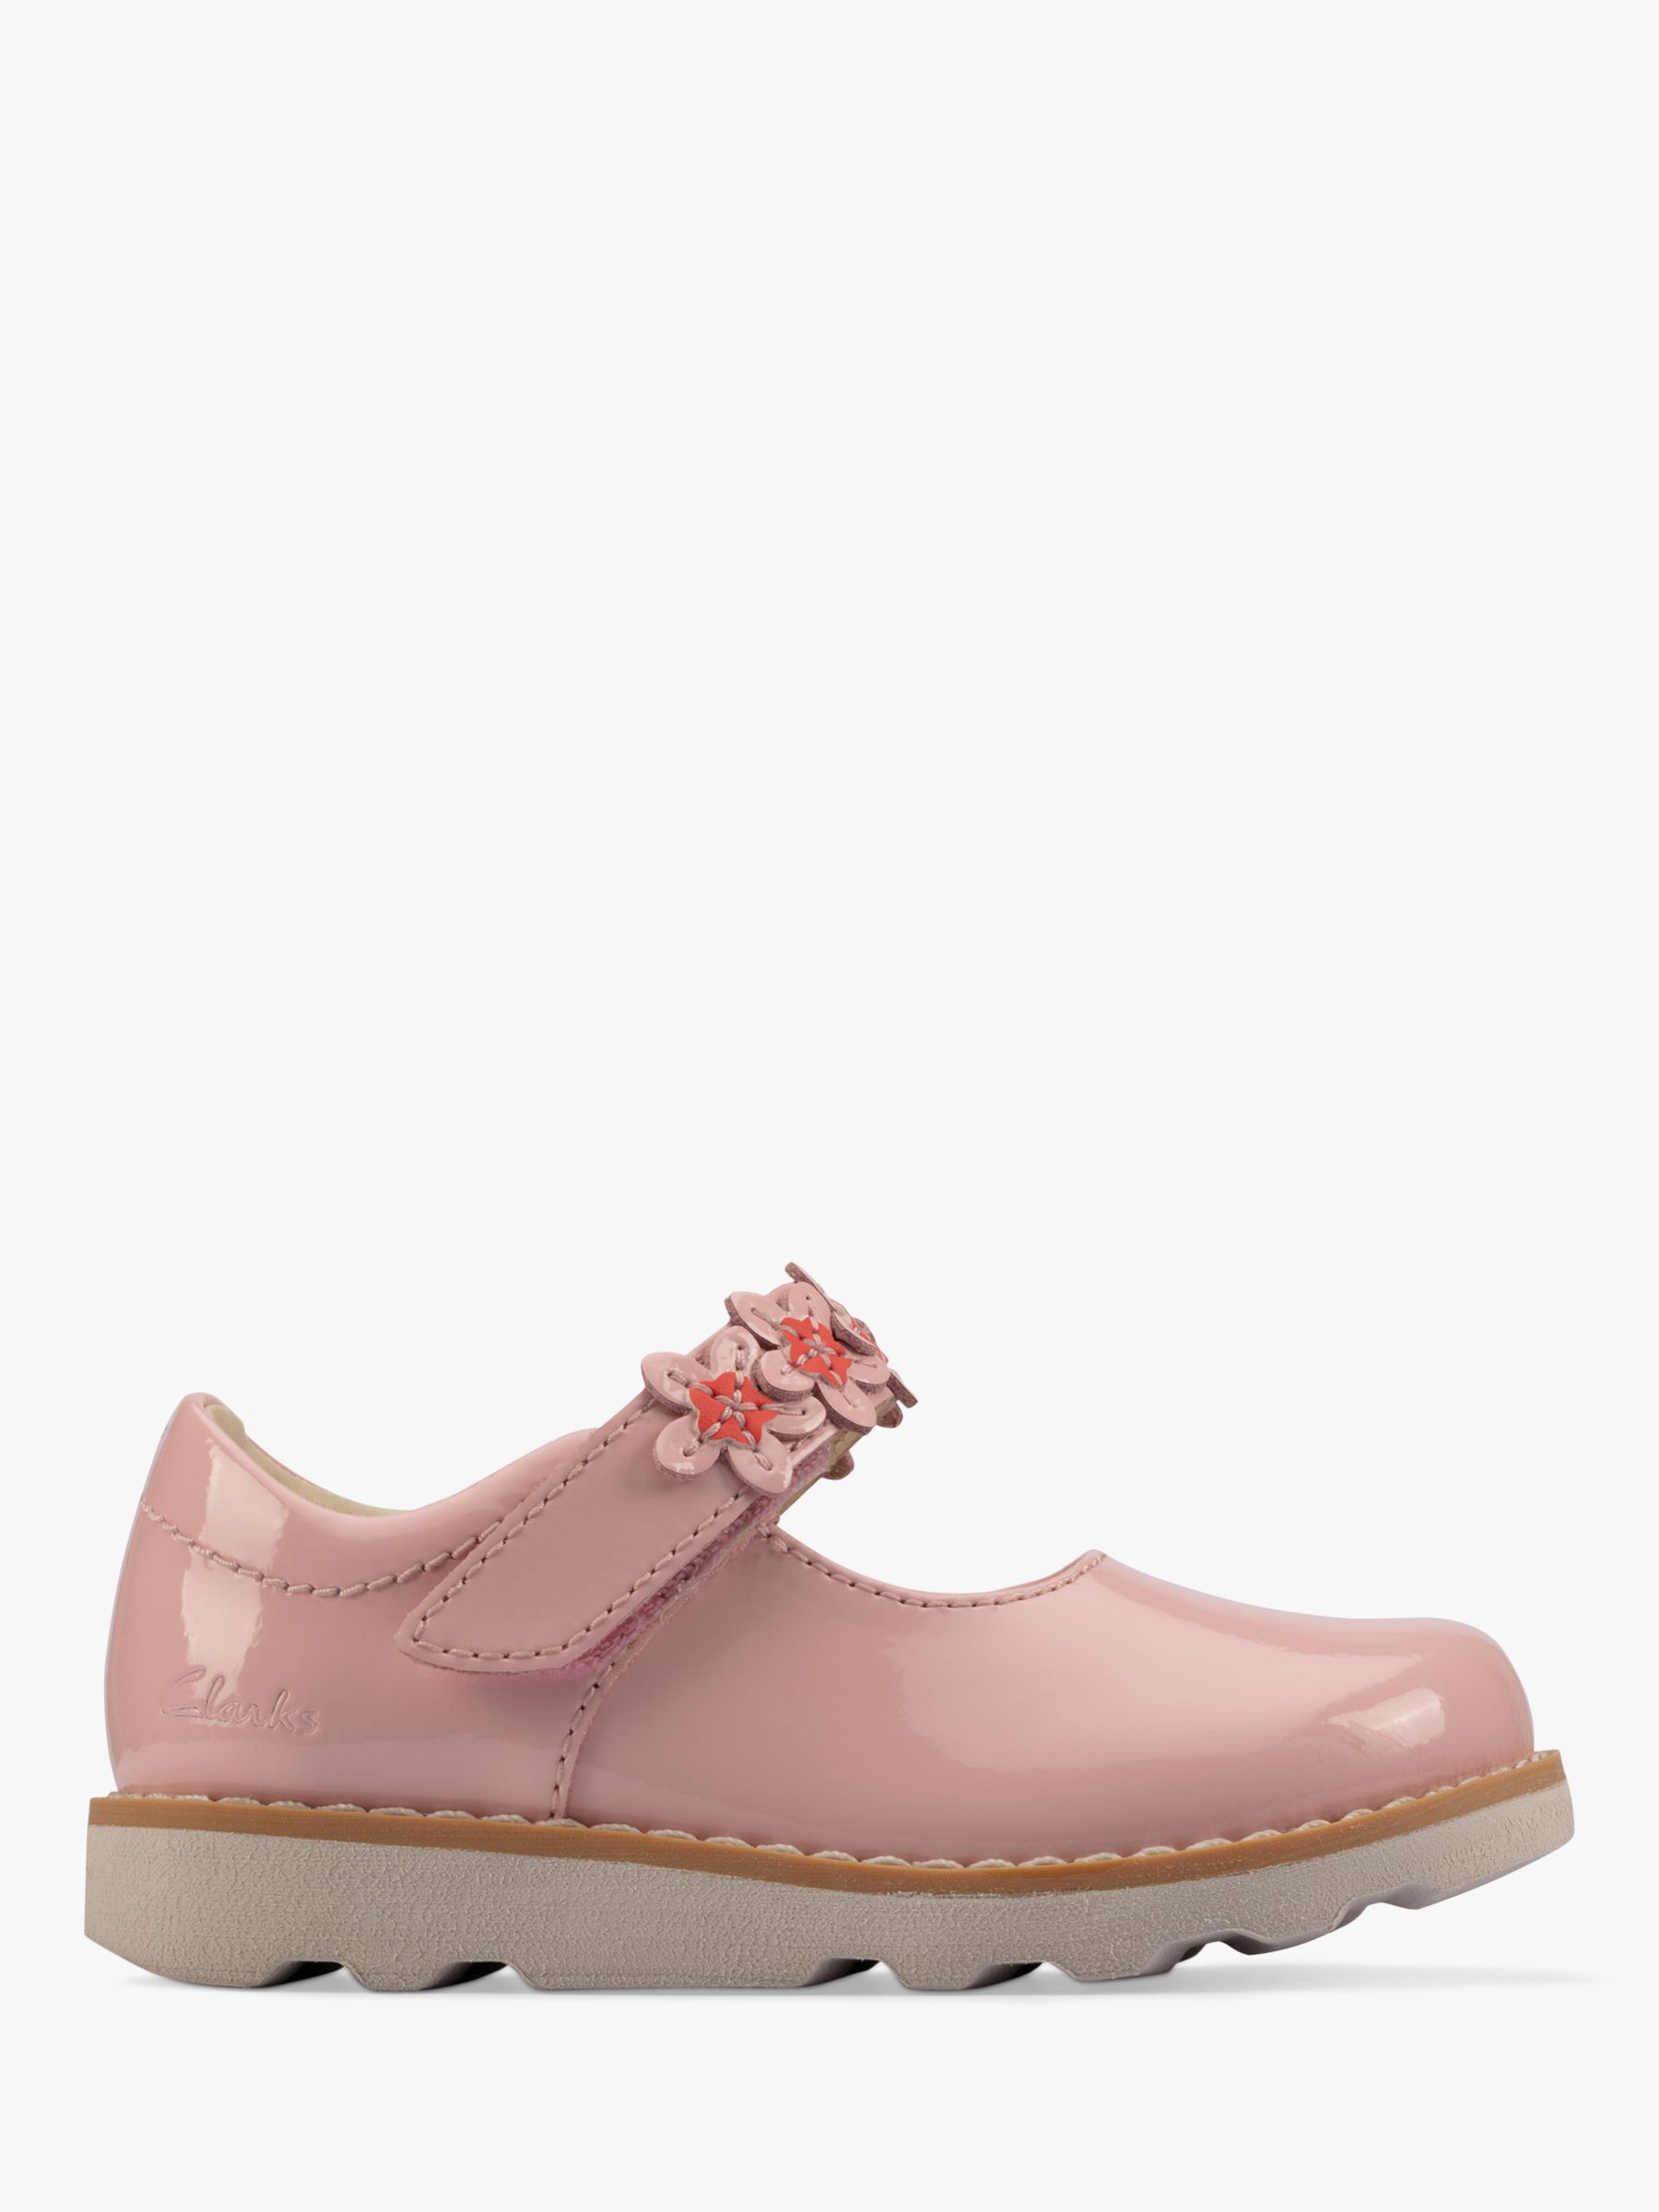 Clarks Kids' Crown Petal Jane Shoes, Light Pink, 4F Jnr